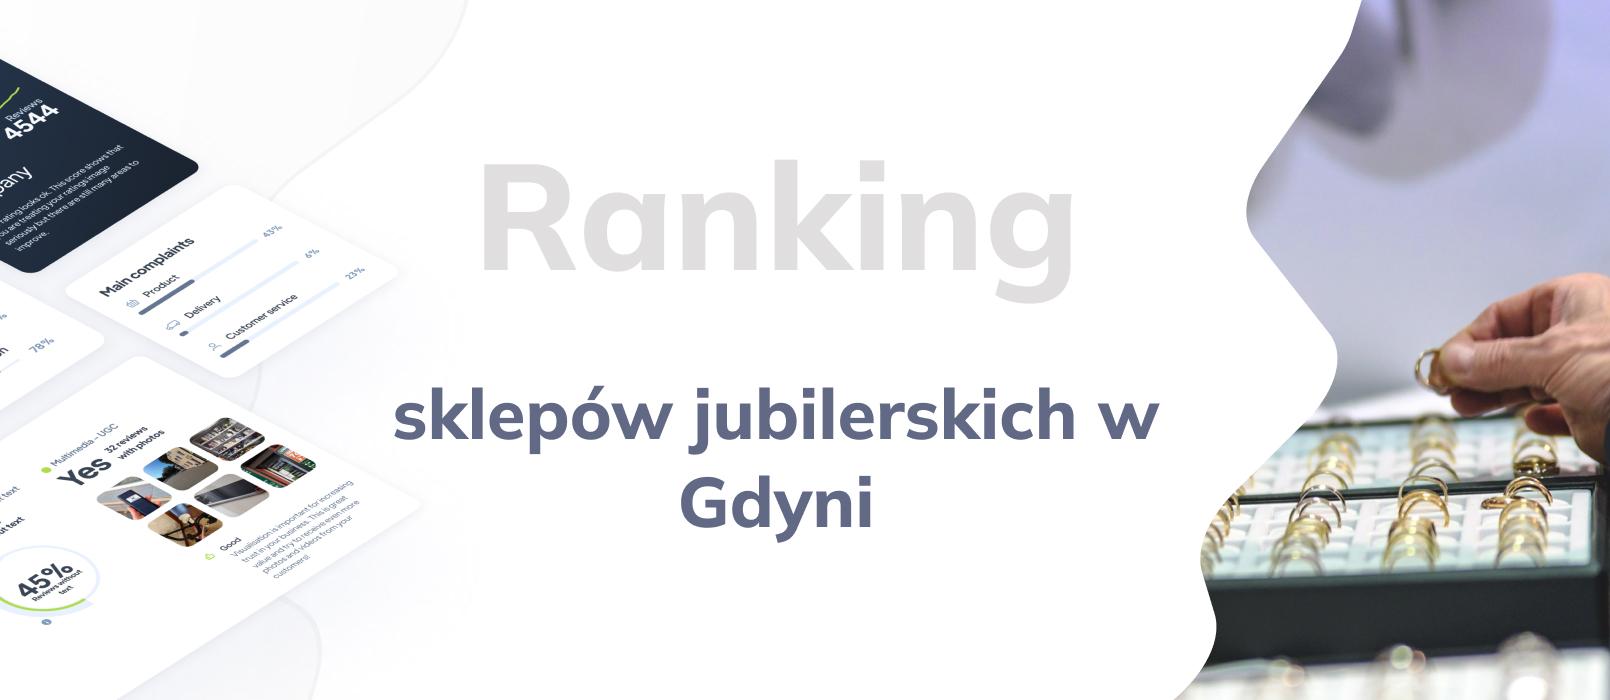 Sklepy jubilerskie w Gdyni - ranking TOP 10